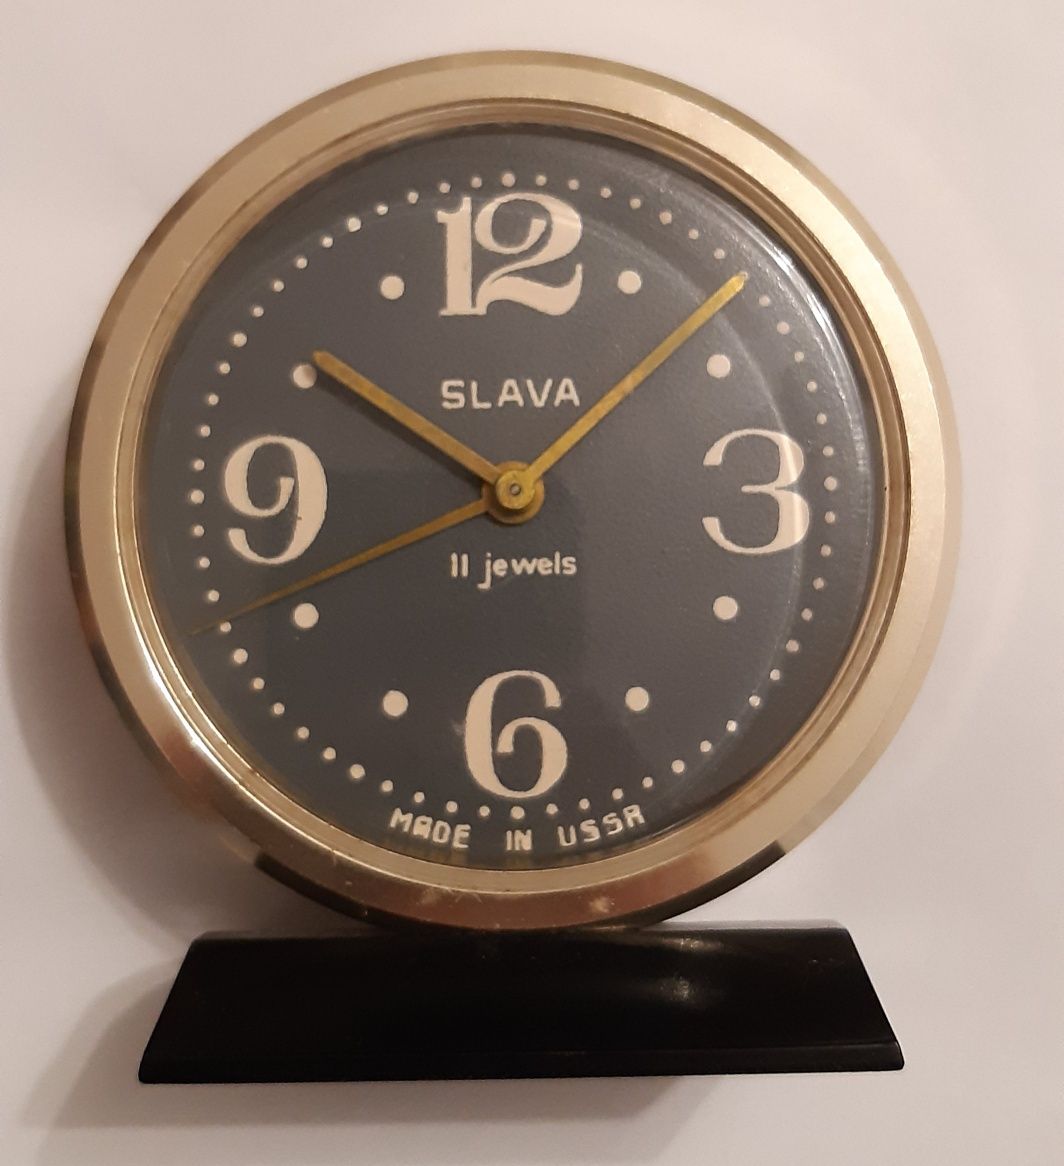 Lot piese schimb ceas rusesc desteptator Slava 11 rubine + ceas Slava